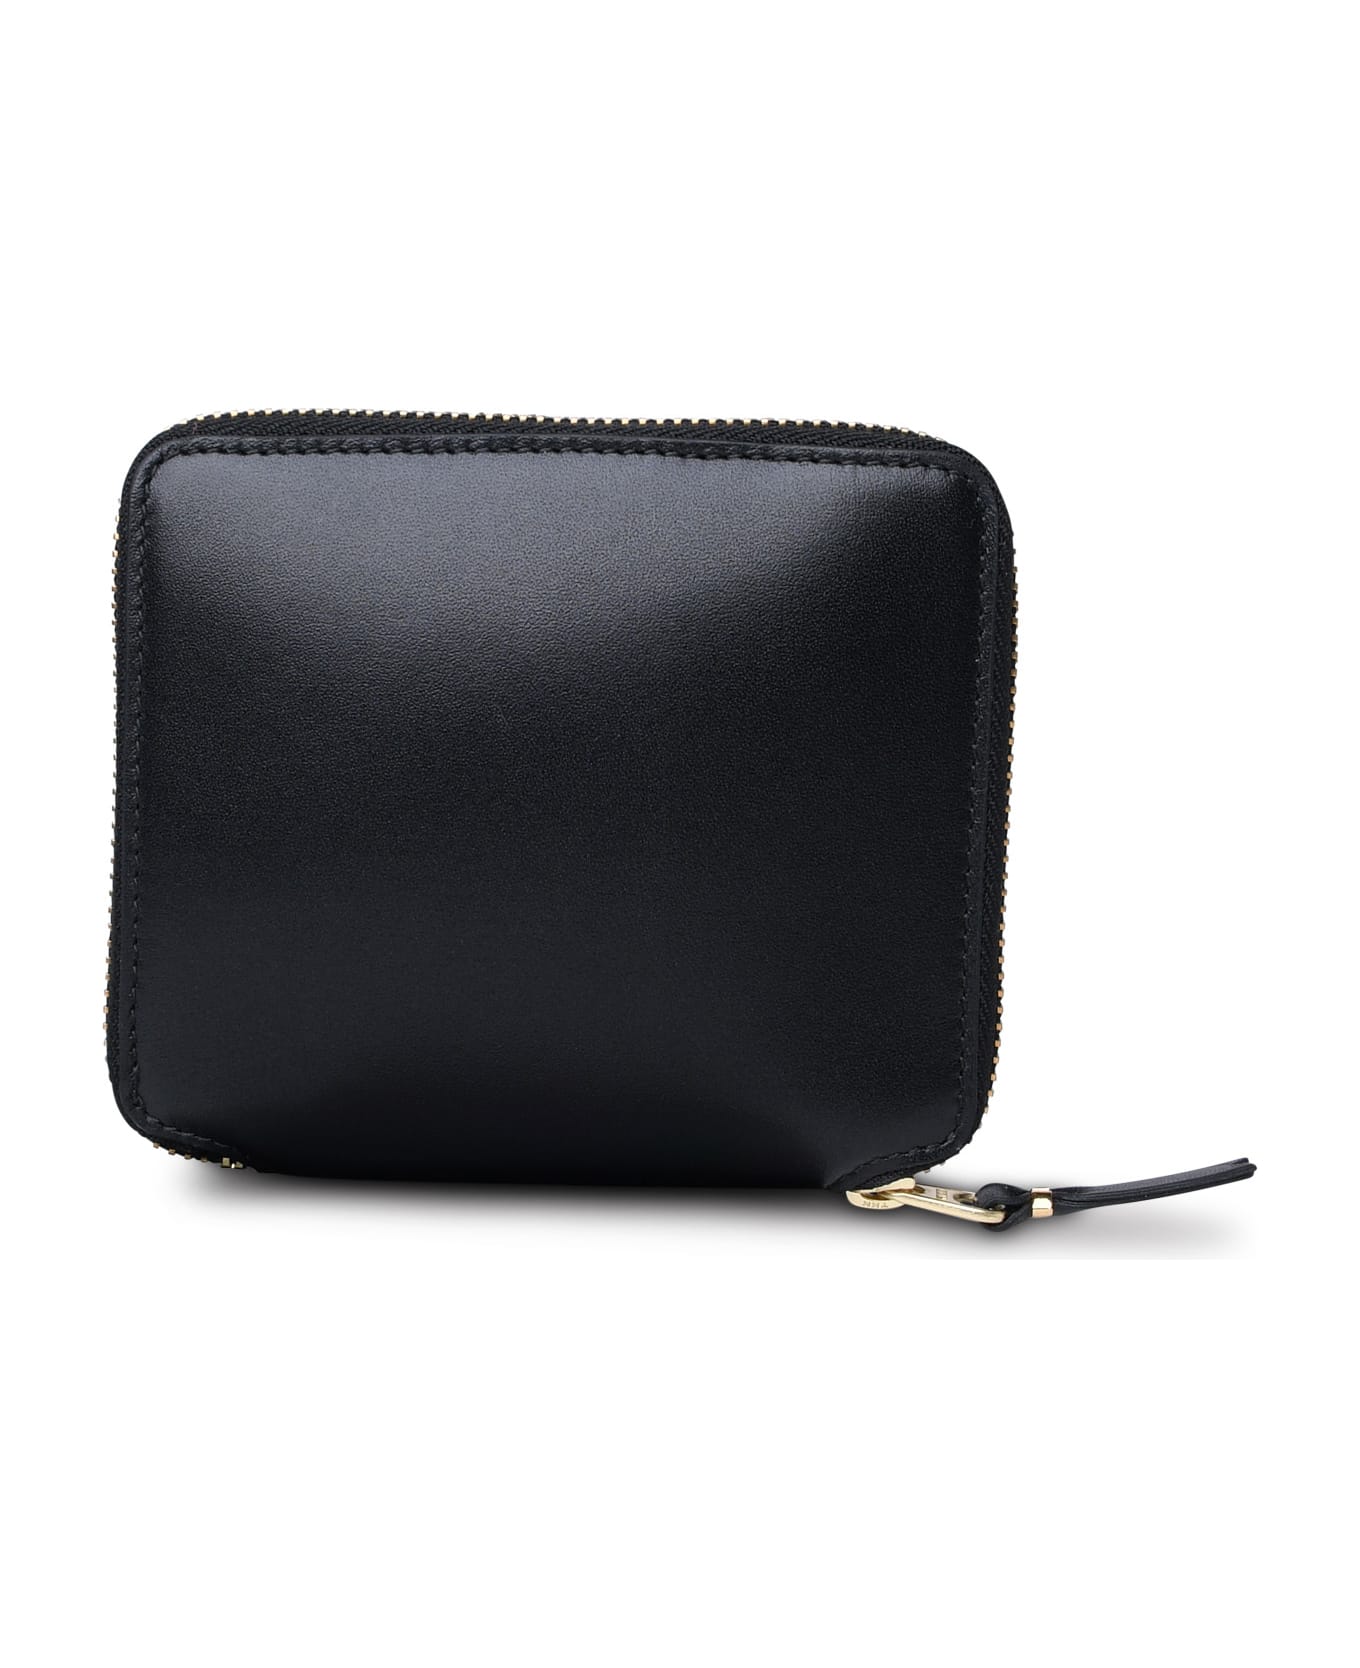 Comme des Garçons Wallet Black Leather Wallet - Black 財布